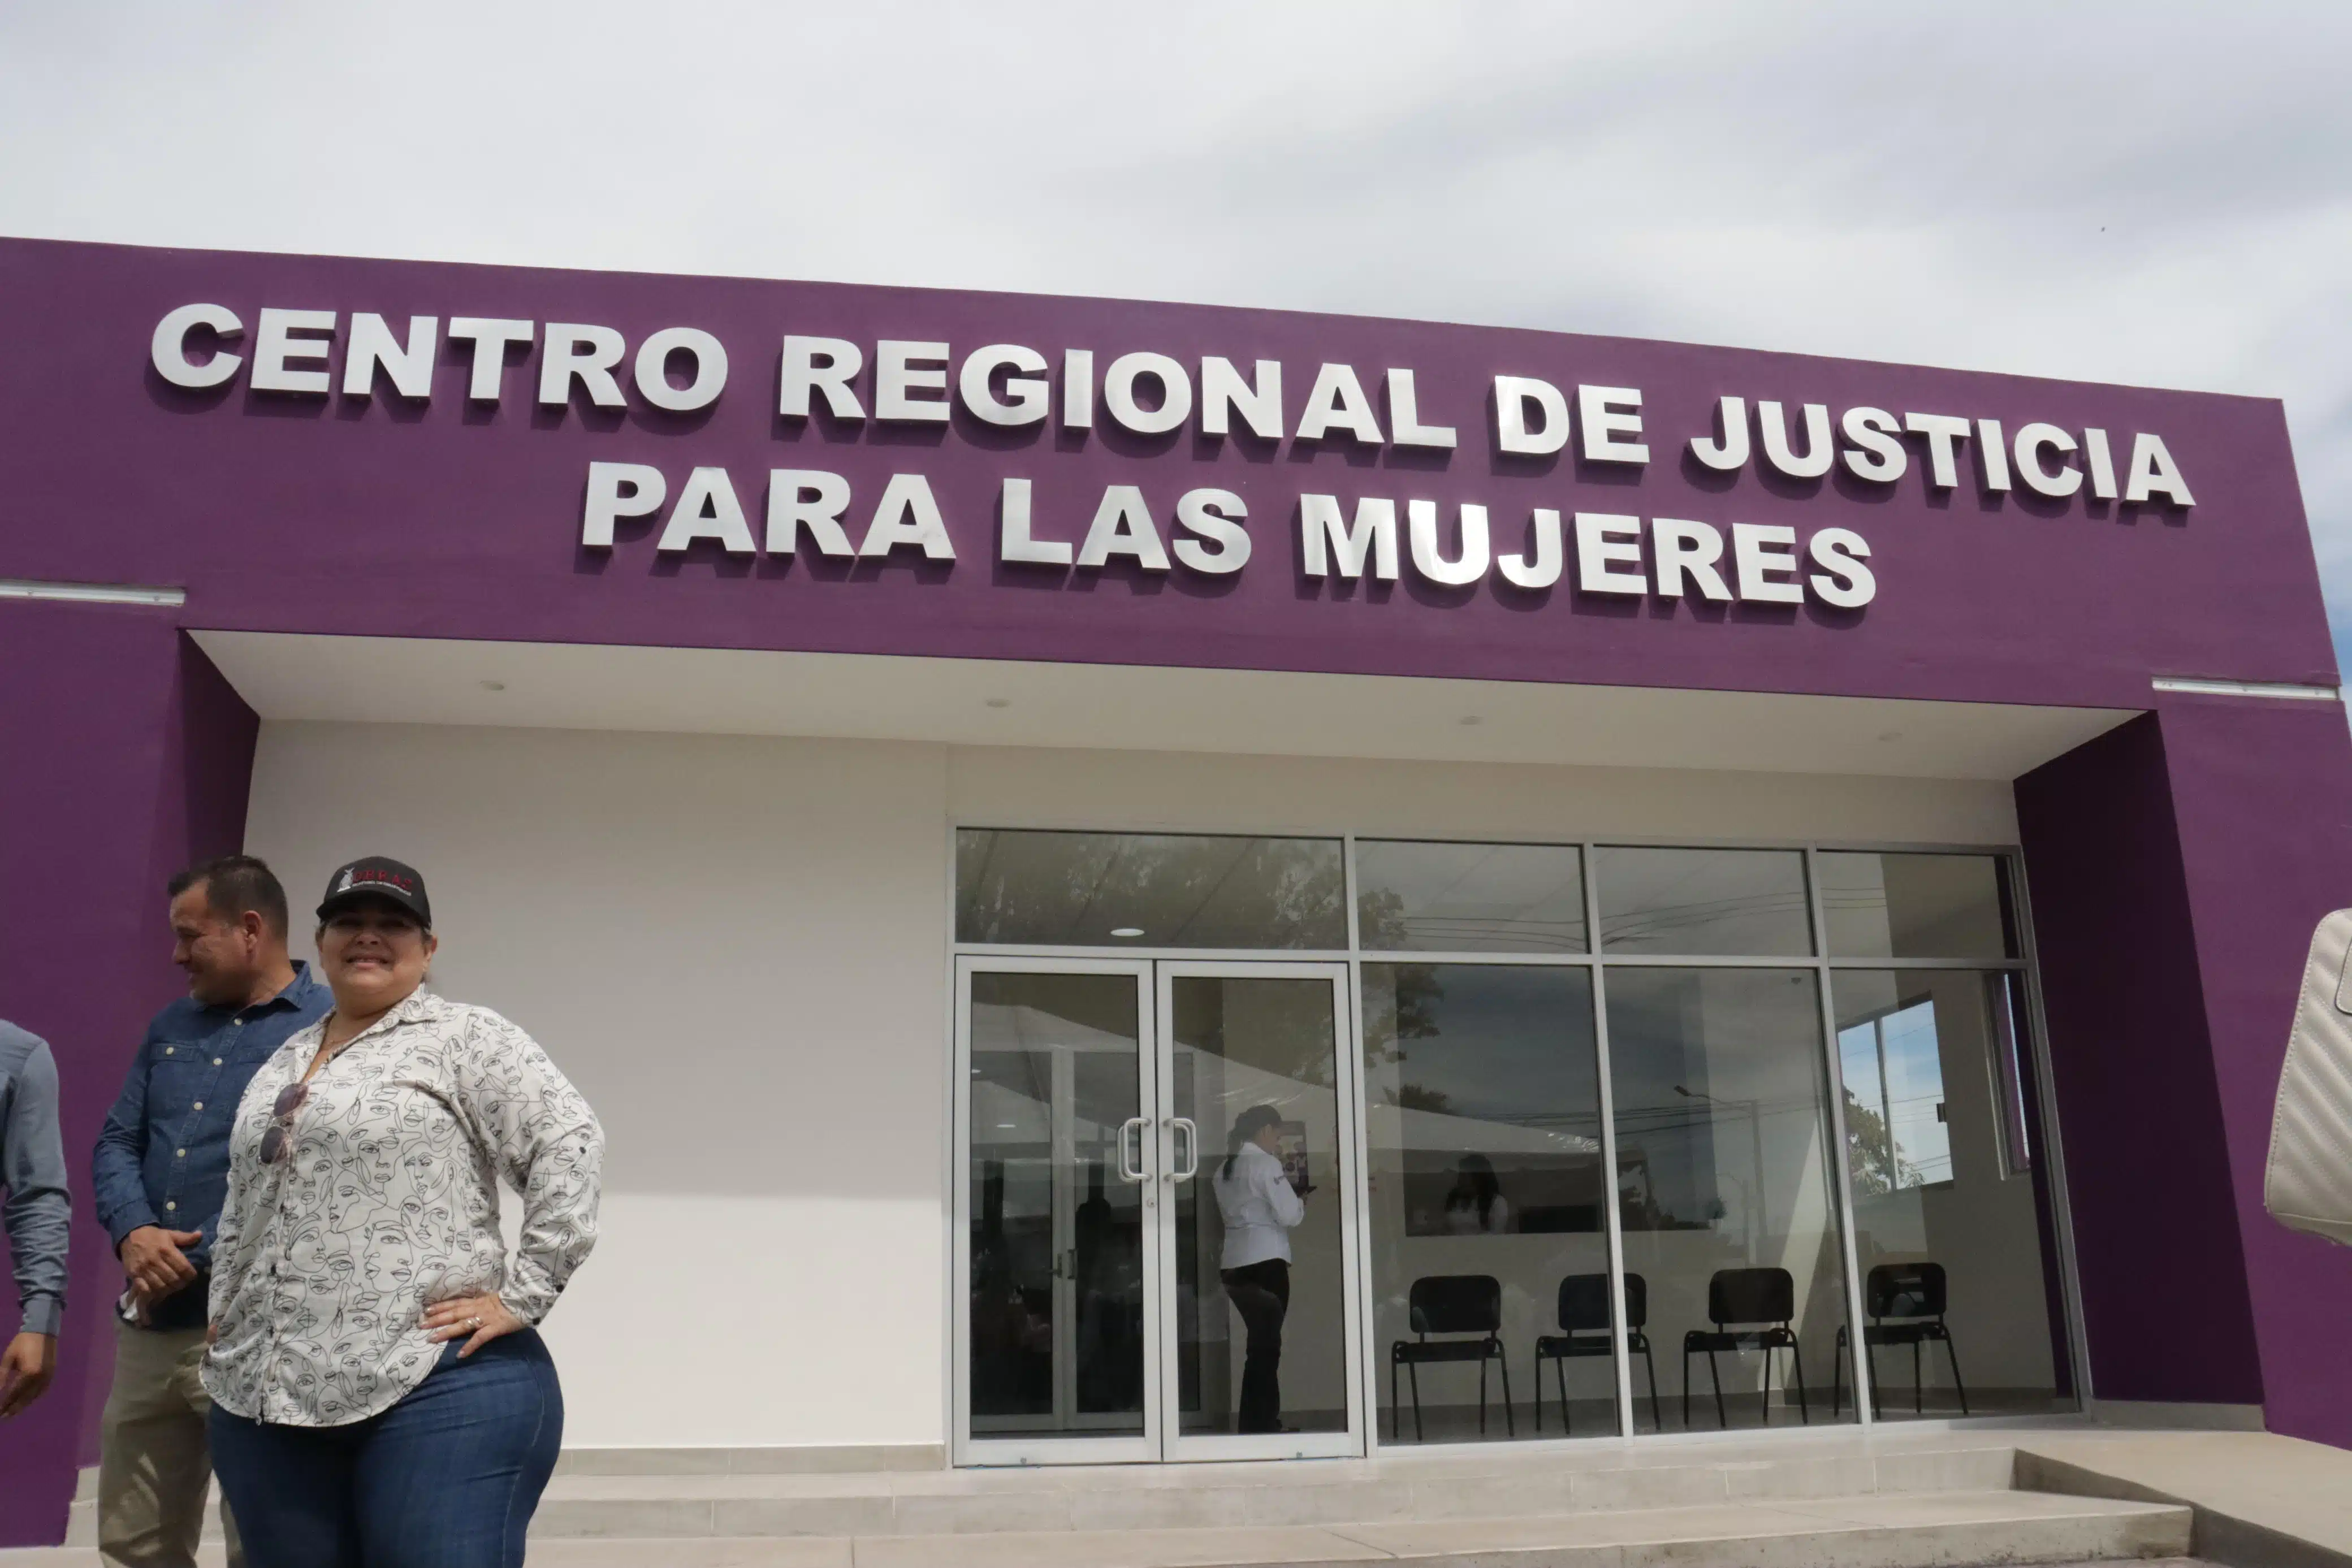 Centro Regional de Justicia para las Mujeres Zona Norte